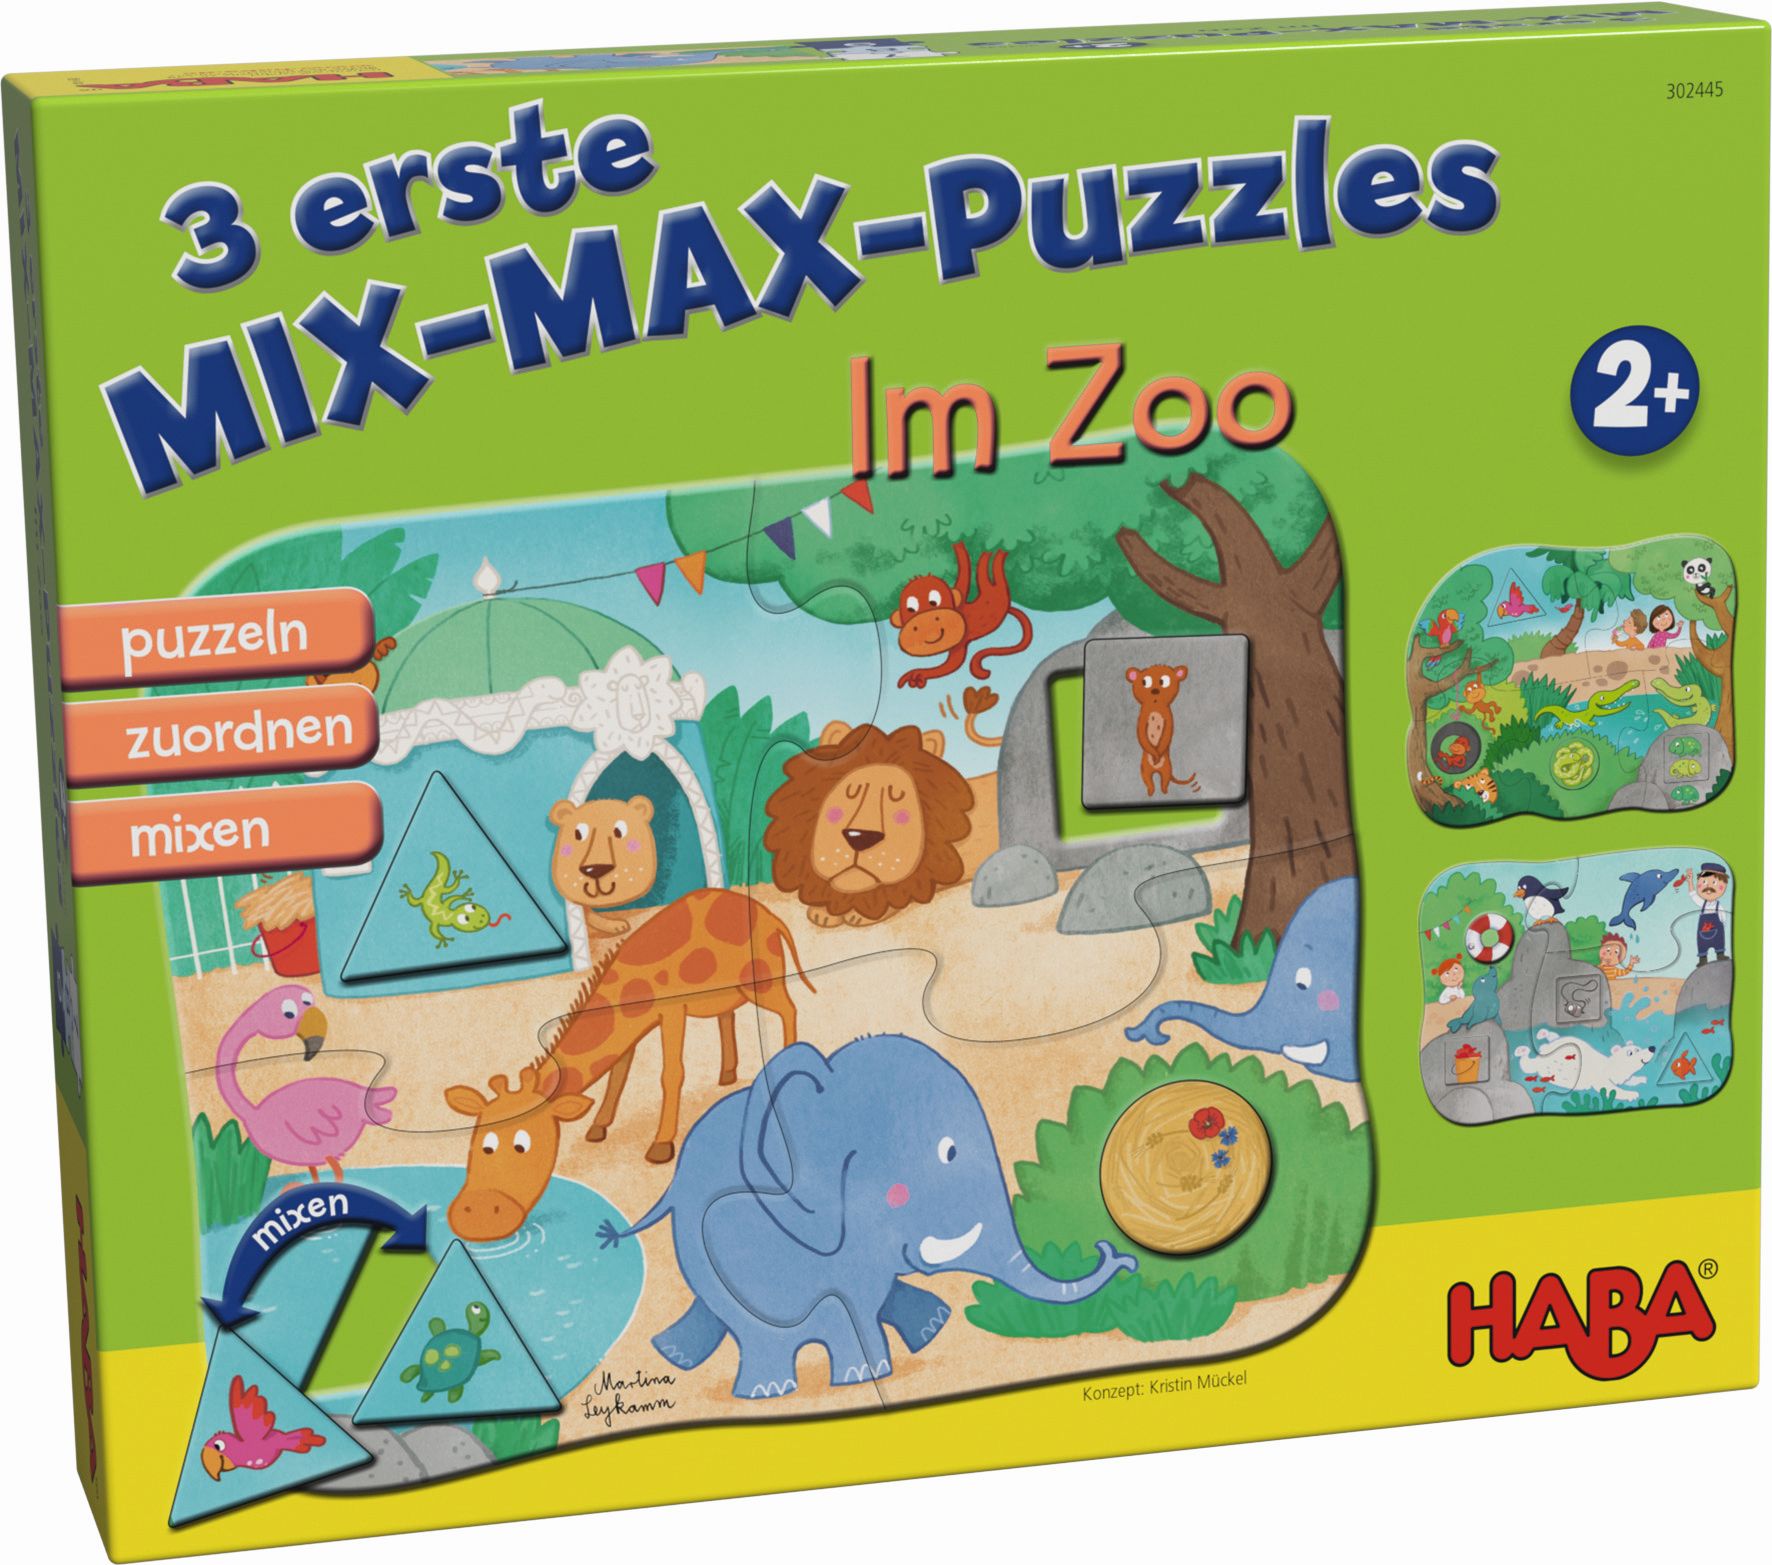 HABA - 3 erste Mix-Max-Puzzles - Zoo von Haba